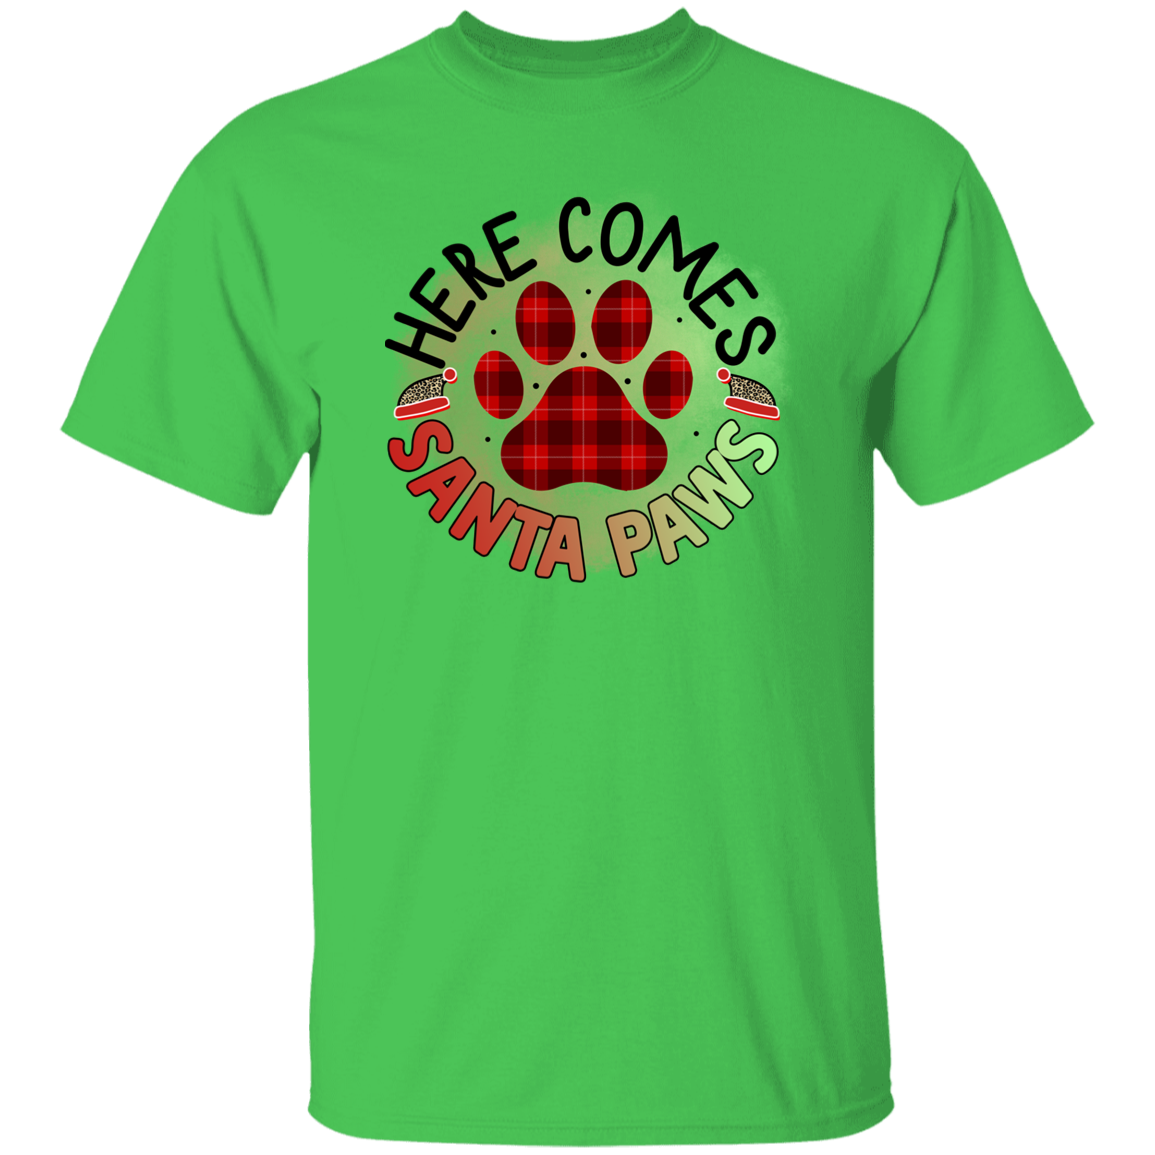 Here Comes Santa Paws Christmas Dog T-Shirt